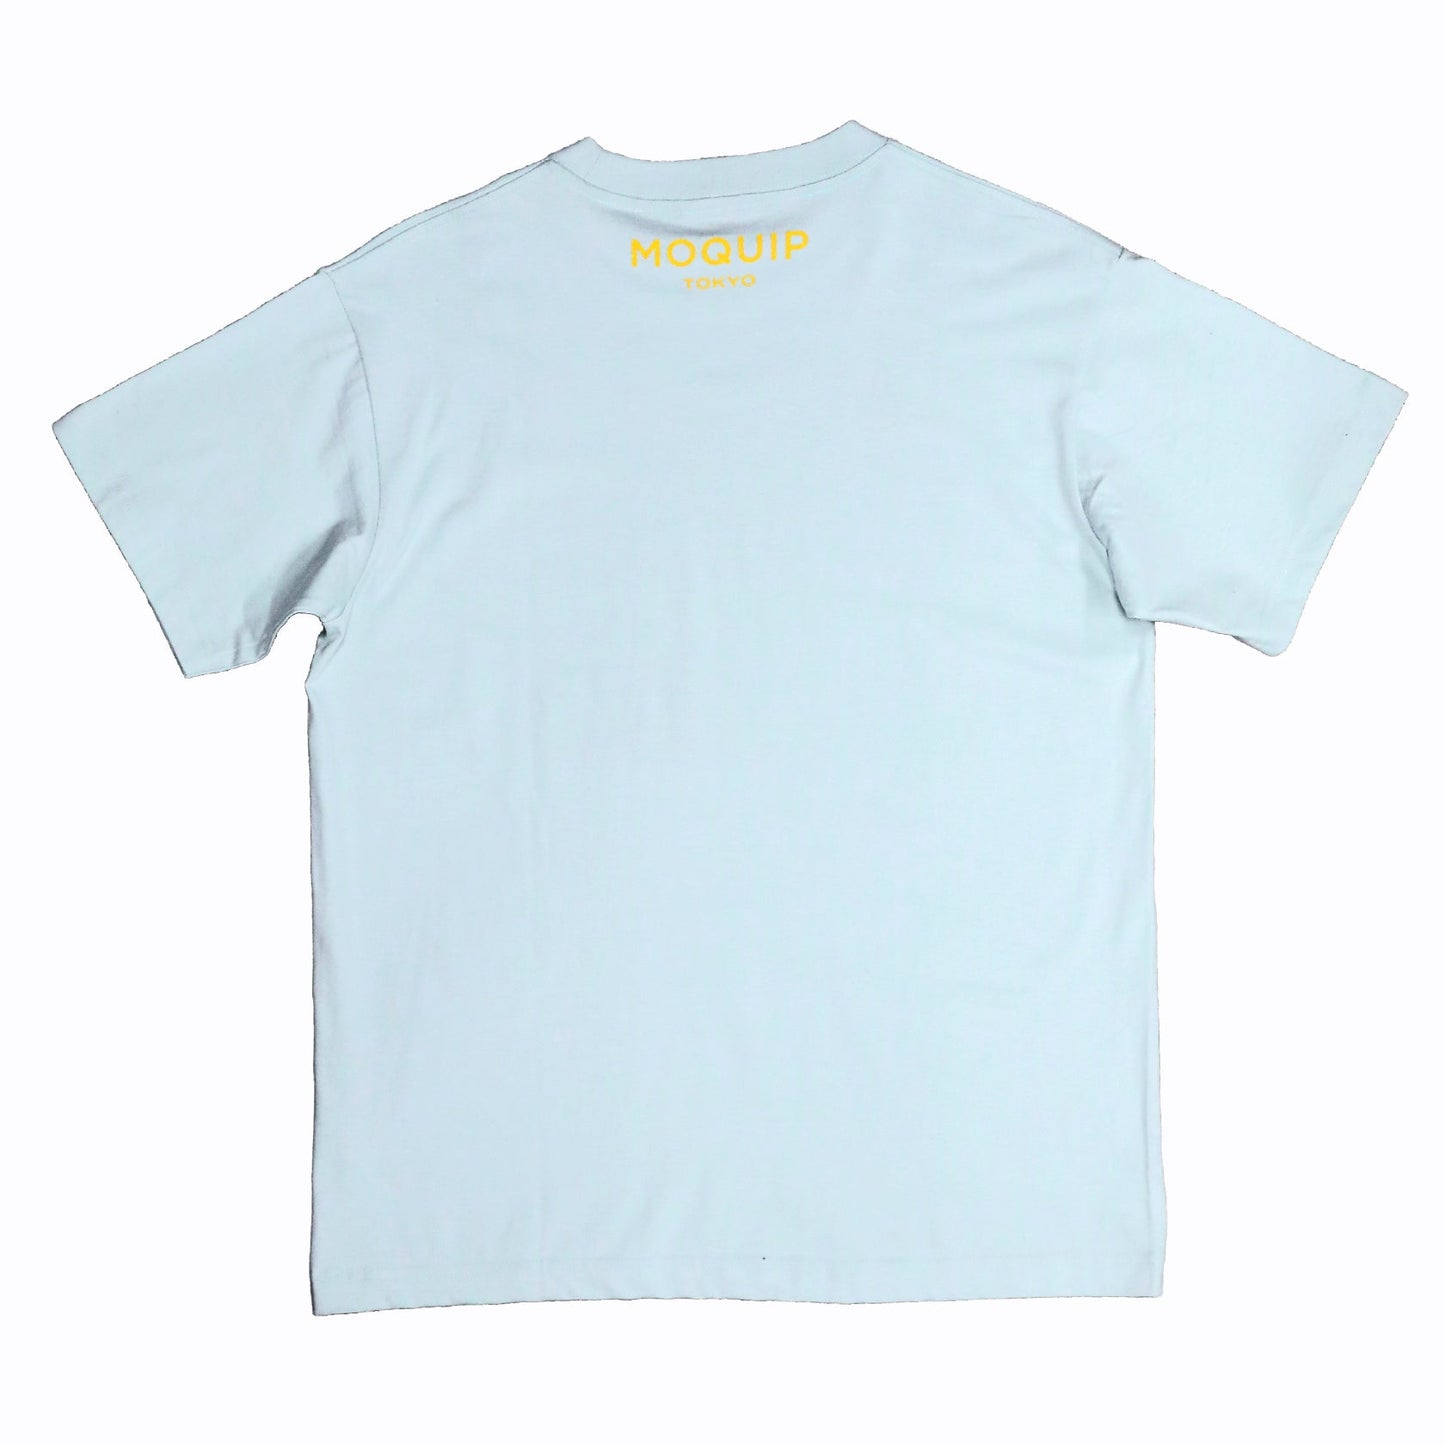 MOQUIP T-shirt logo BLUE